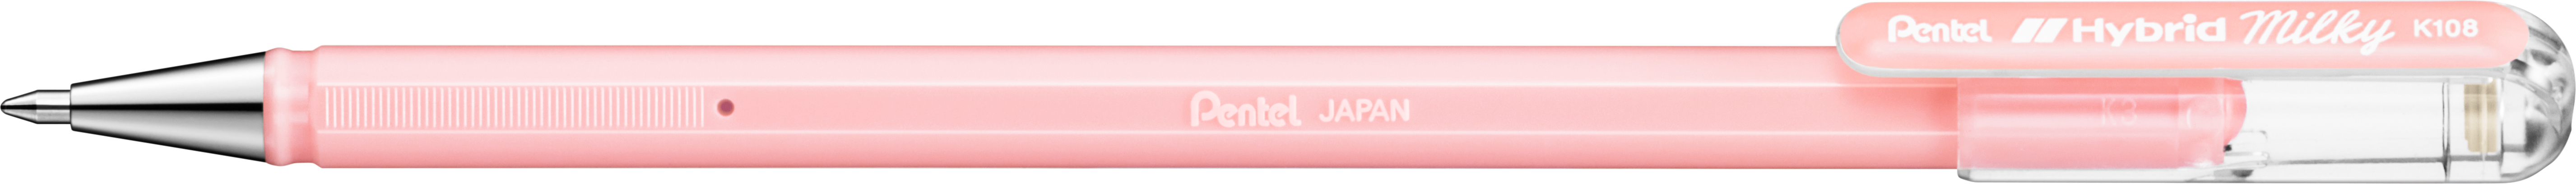 PENTEL Roller Hybrid Metal 0.8mm K108-PP pastell rosa pastell rosa